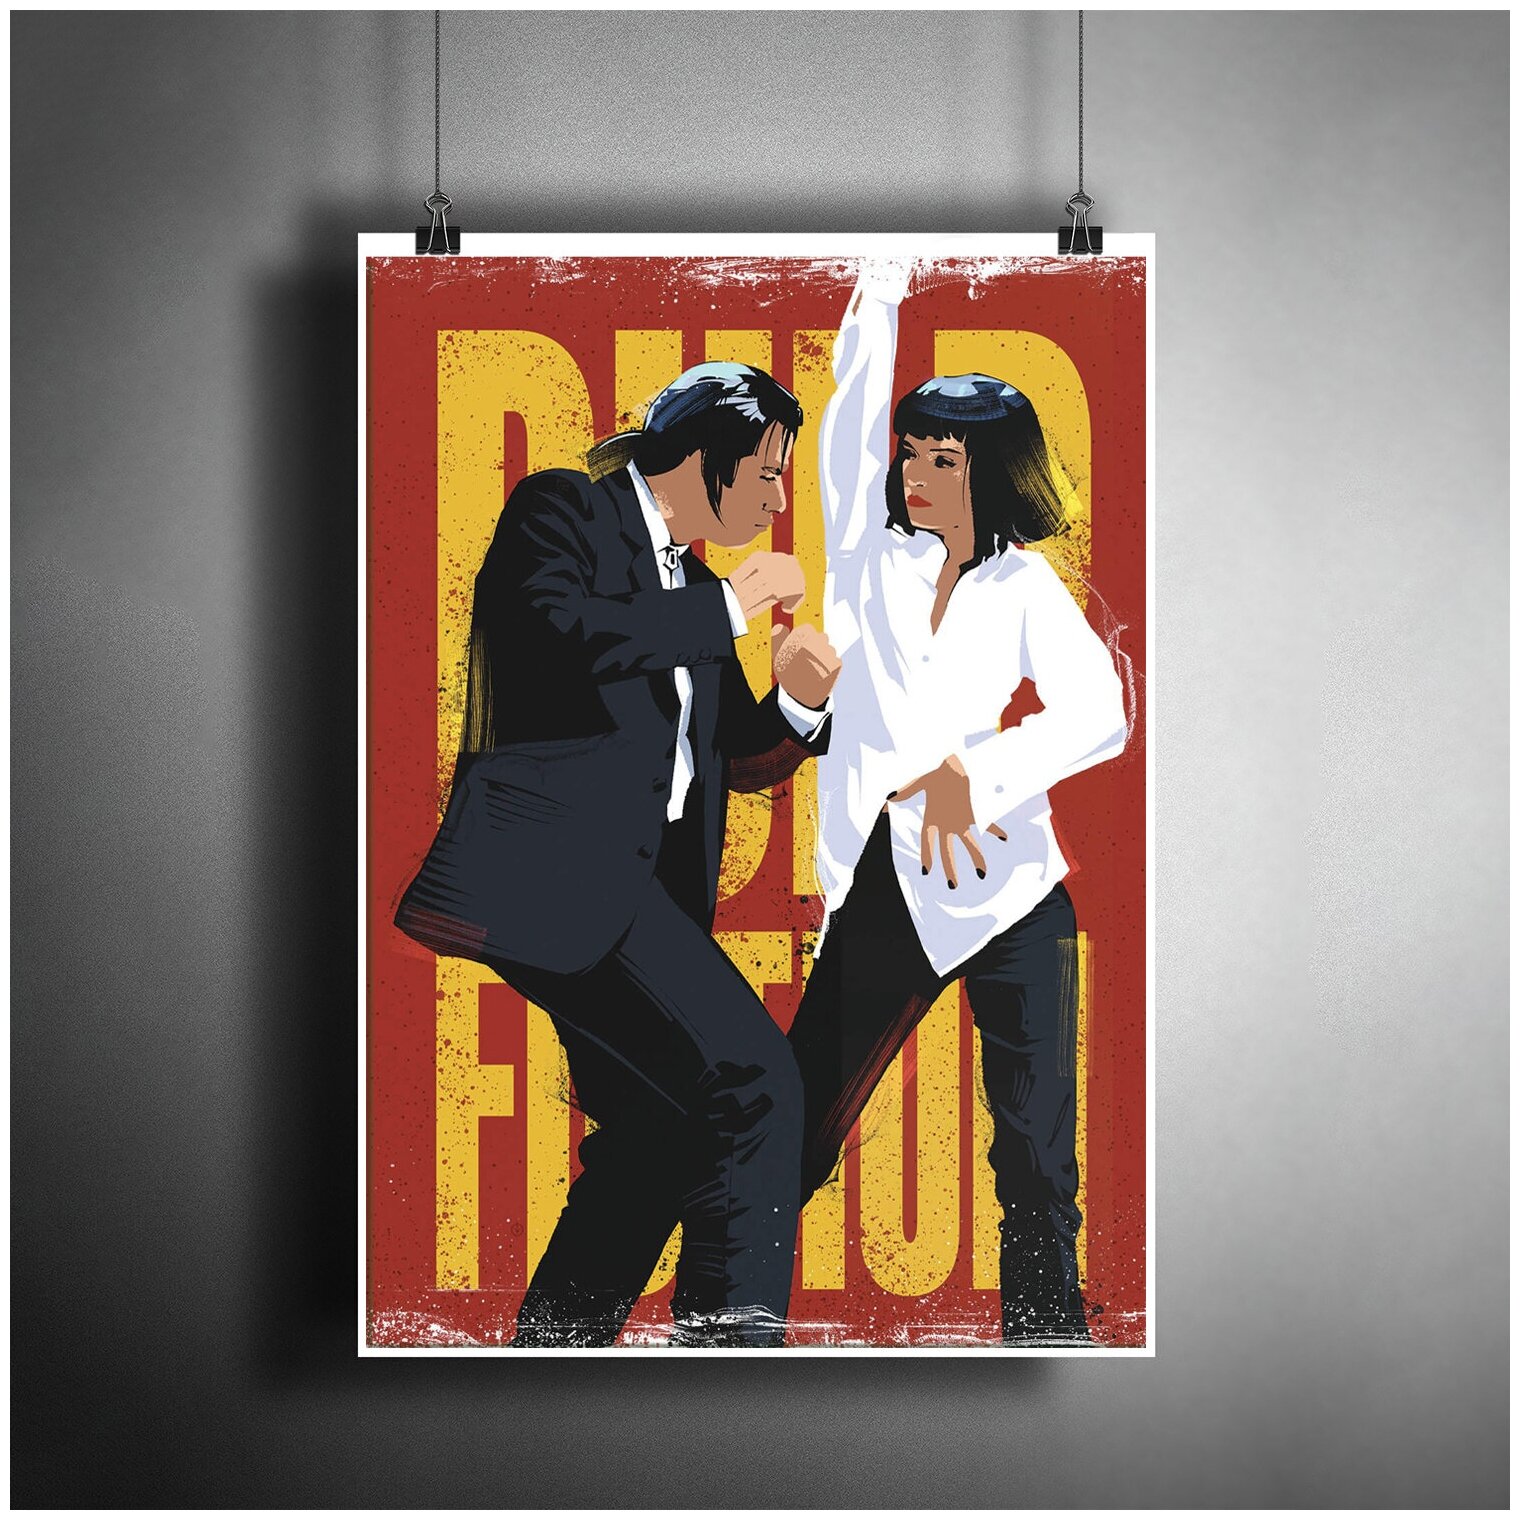 Постер плакат для интерьера "Фильм Квентина Тарантино: Криминальное чтиво. Танцы. Pulp Fiction" / Декор офиса, бара. A3 (297 x 420 мм)